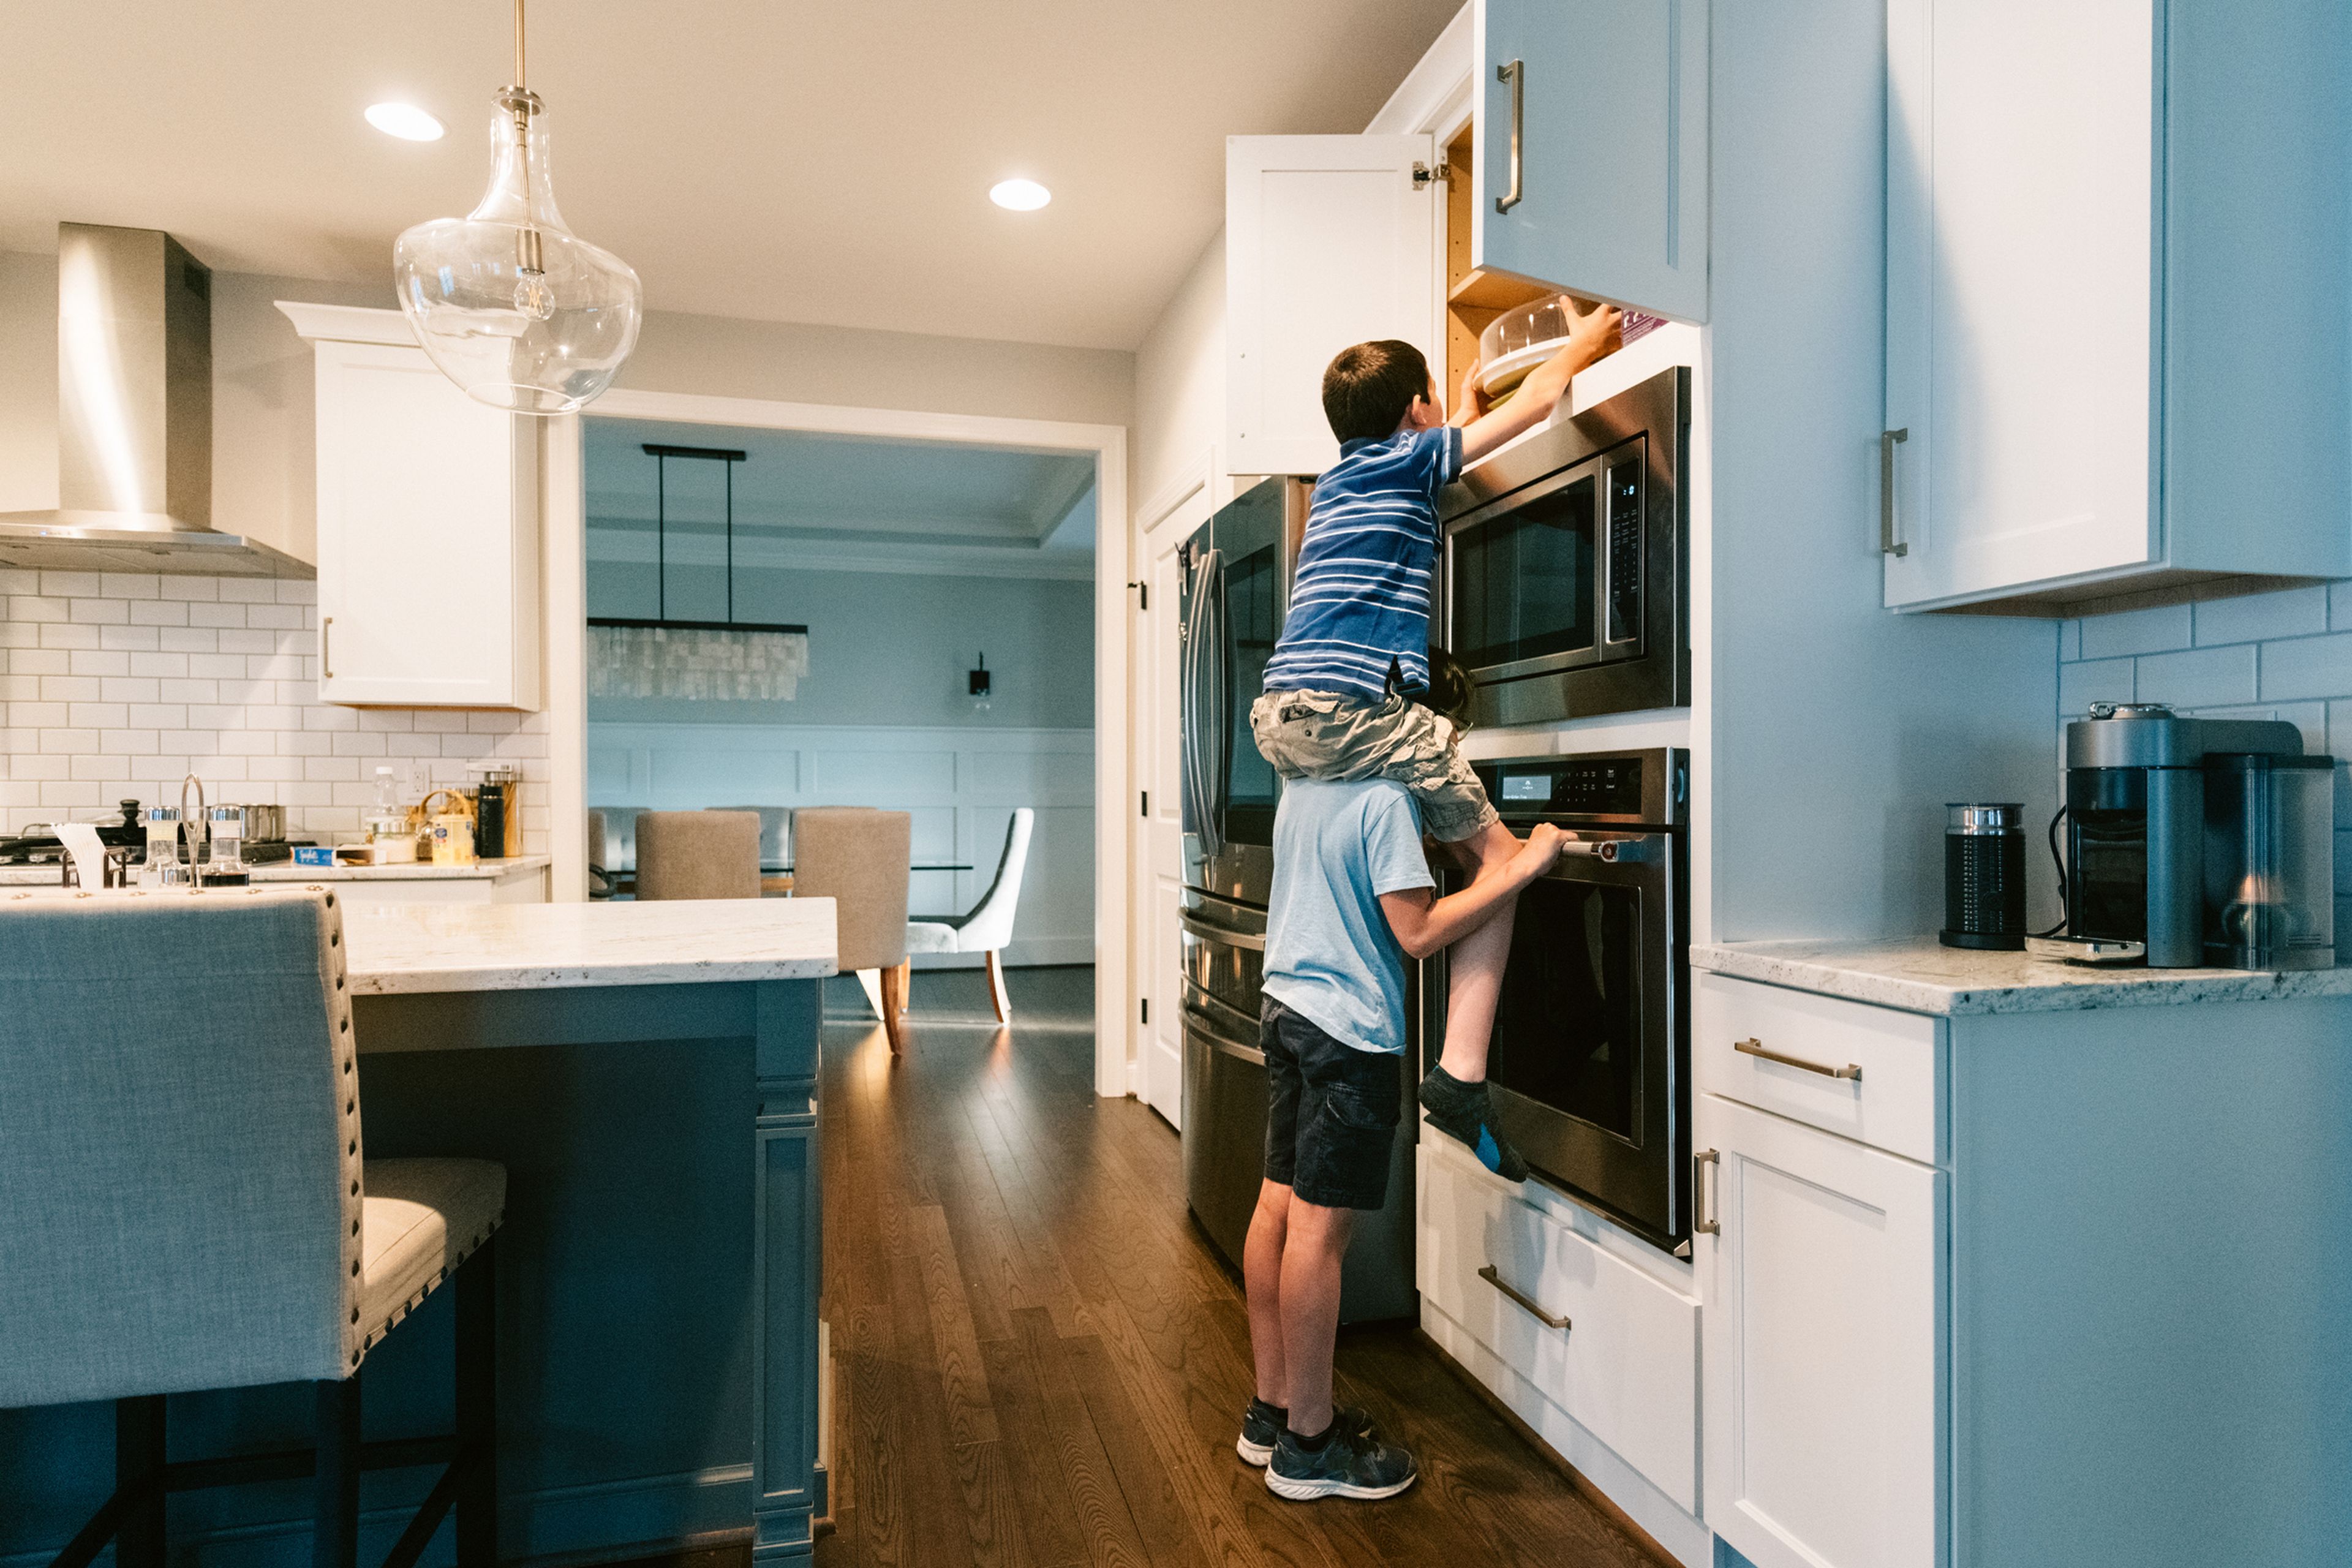 Un niño levanta a otro para coger algo de un mueble de la cocina.